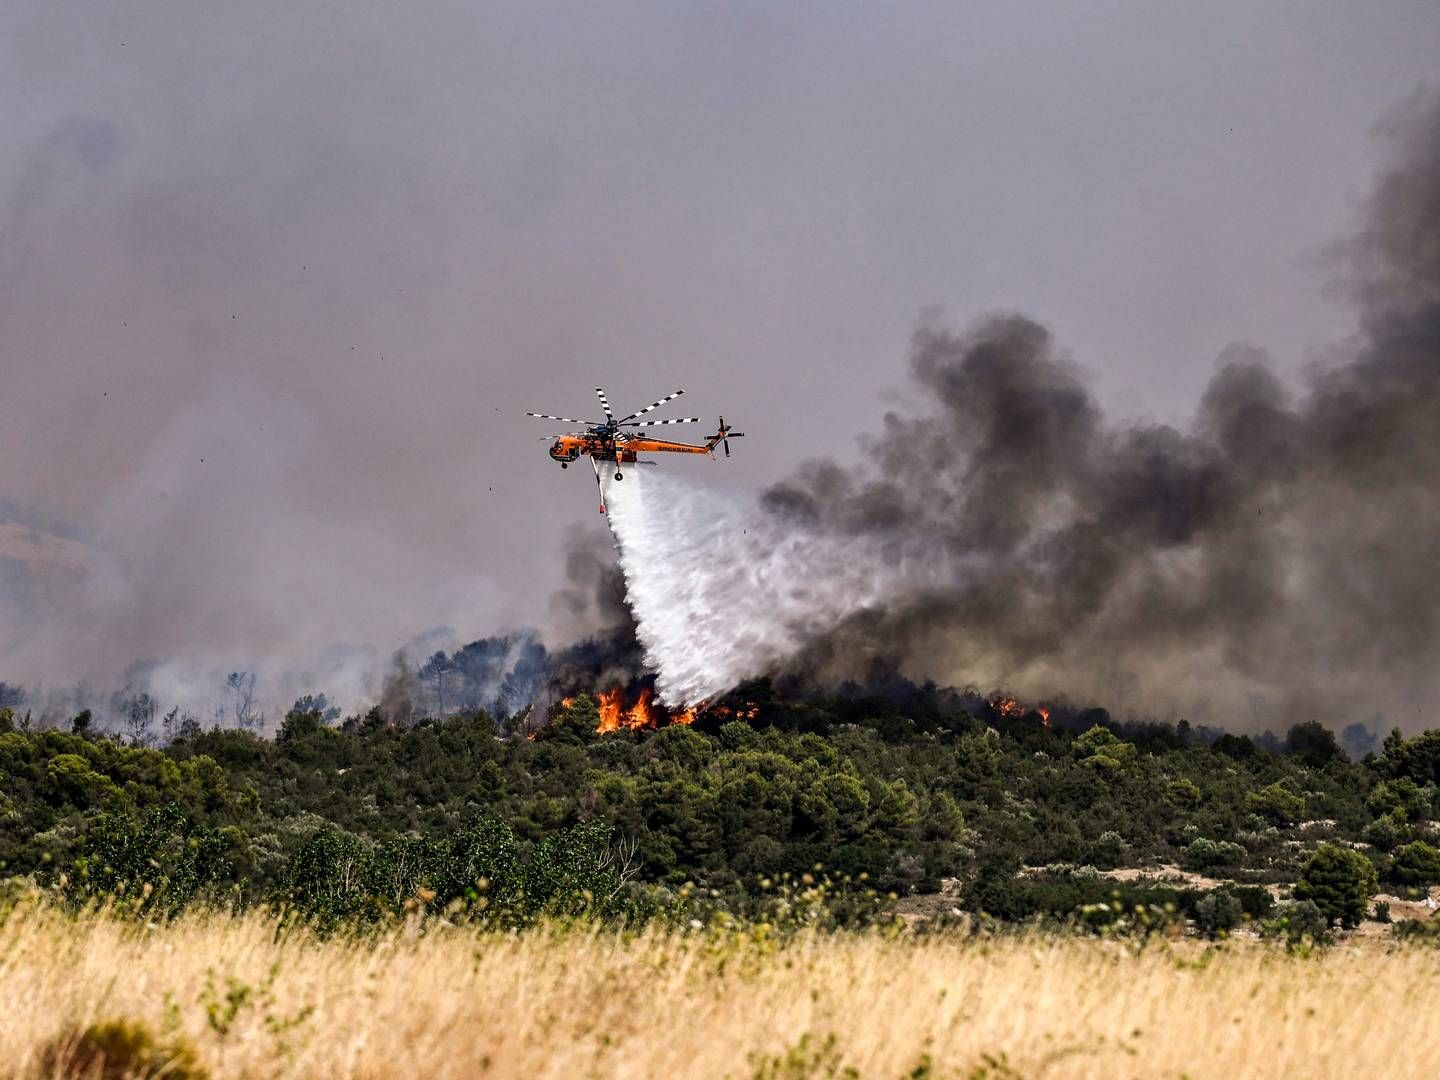 Udbredt tørke har forårsaget voldsomme naturbrande i blandt andet Dervenochoria nordvest for den græske hovedstad Athen. | Foto: Spyros Bakalis/AFP/Ritzau Scanpix